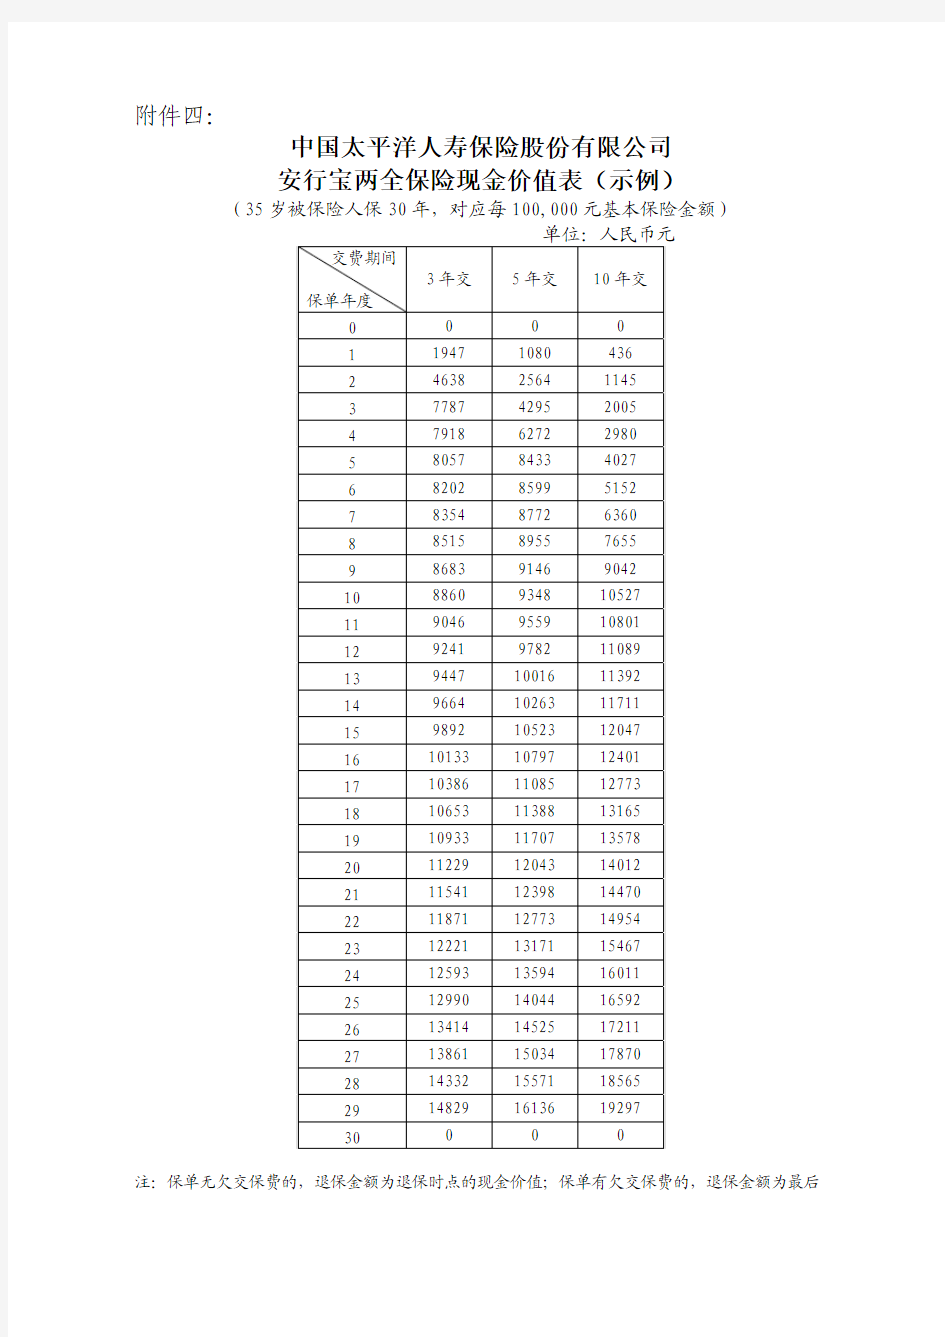 太保寿(2014)32号附件04安行宝两全保险现金价值表(示例)